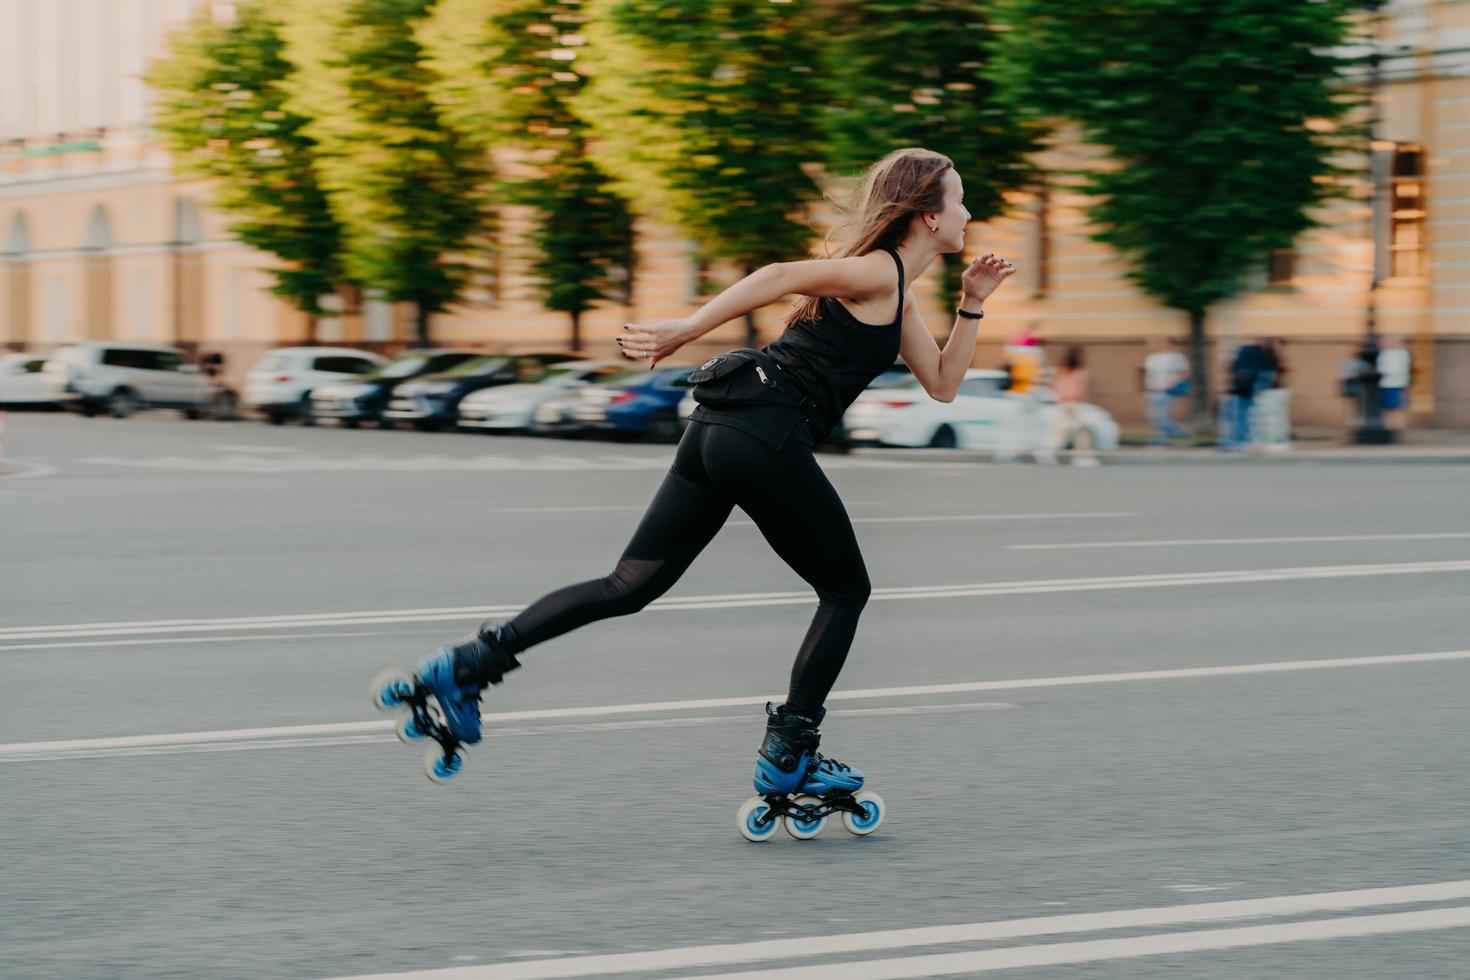 rolo feminino profissional demonstra suas habilidades de passeios de patins muito rapidamente na estrada ao longo da cidade gosta de dia ensolarado vestido com roupa preta ativa. hobby de estilo de vida ativo e atividade de fitness foto